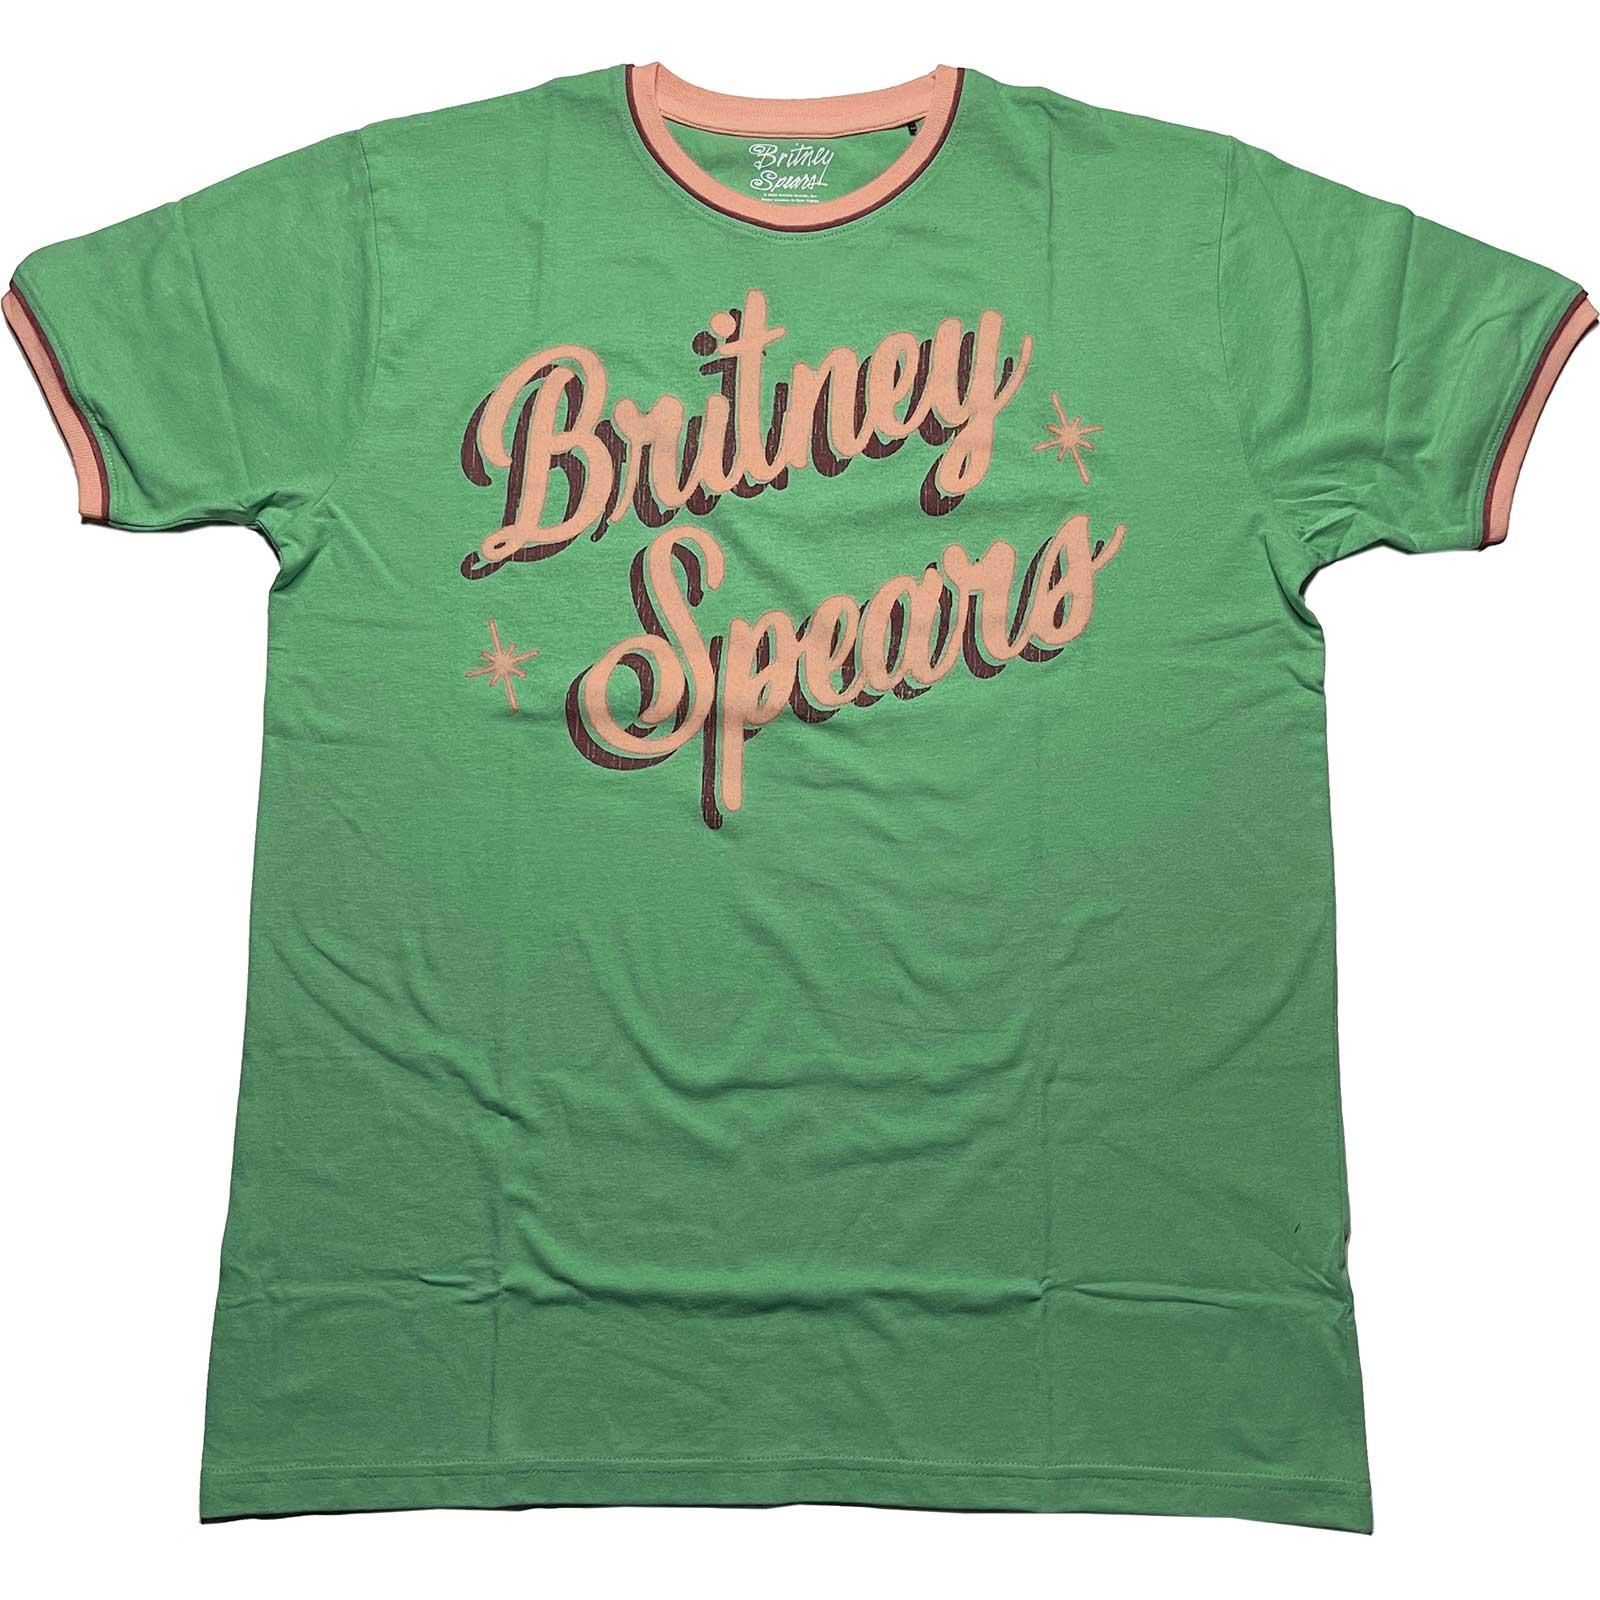 (ブリトニー・スピアーズ) Britney Spears オフィシャル商品 ユニセックス レトロ リンガー Tシャツ 半袖 トップス 【海外通販】